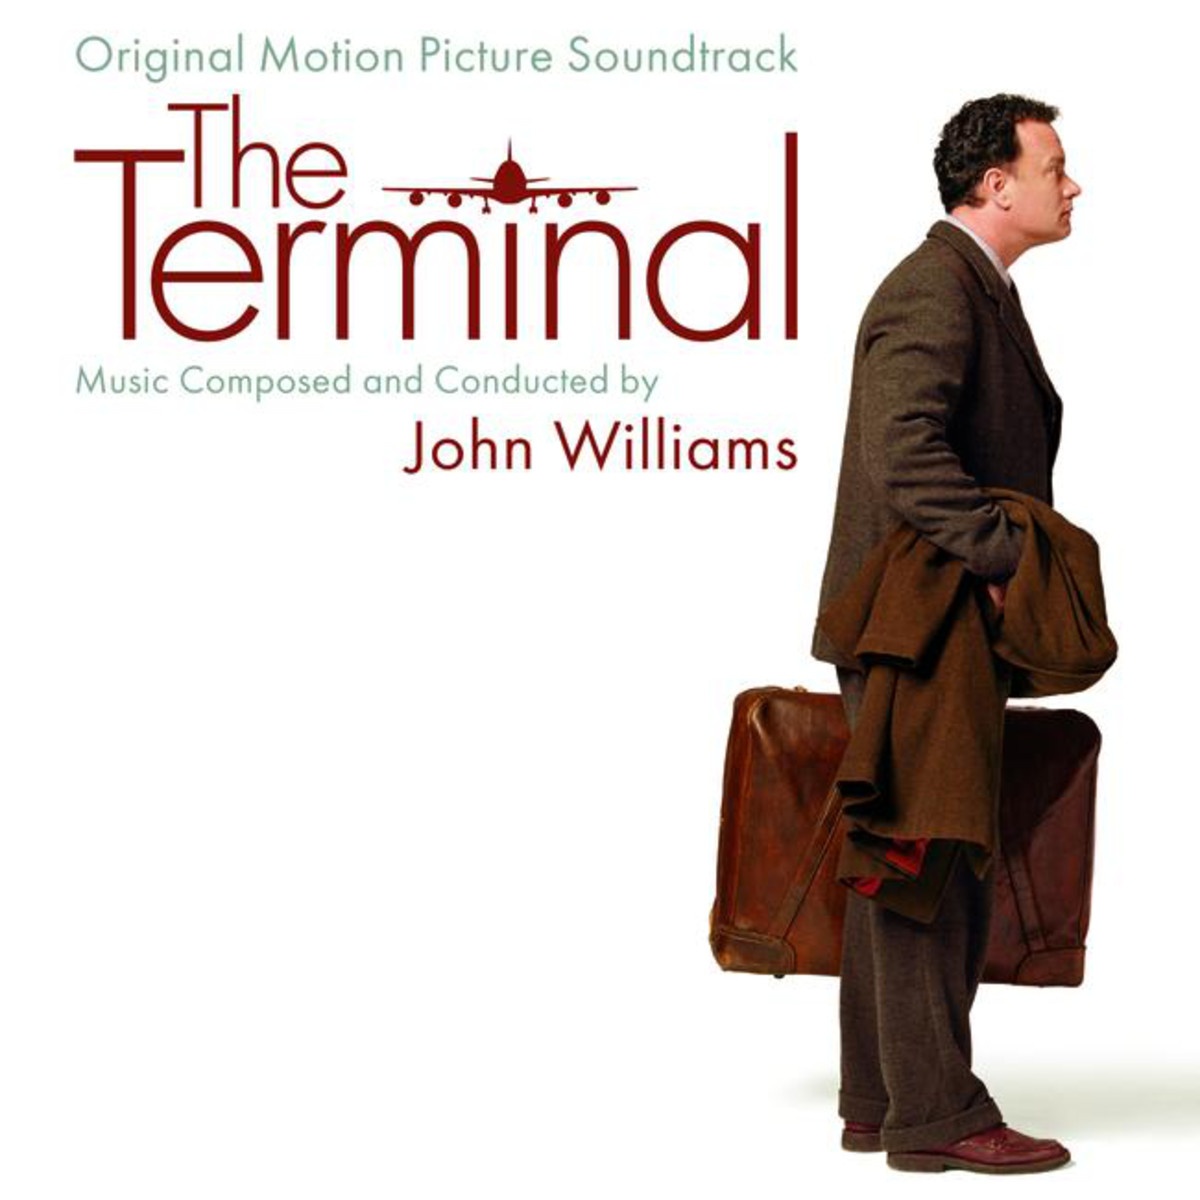 Williams: The Fountain Scene - The Terminal/Soundtrack Version